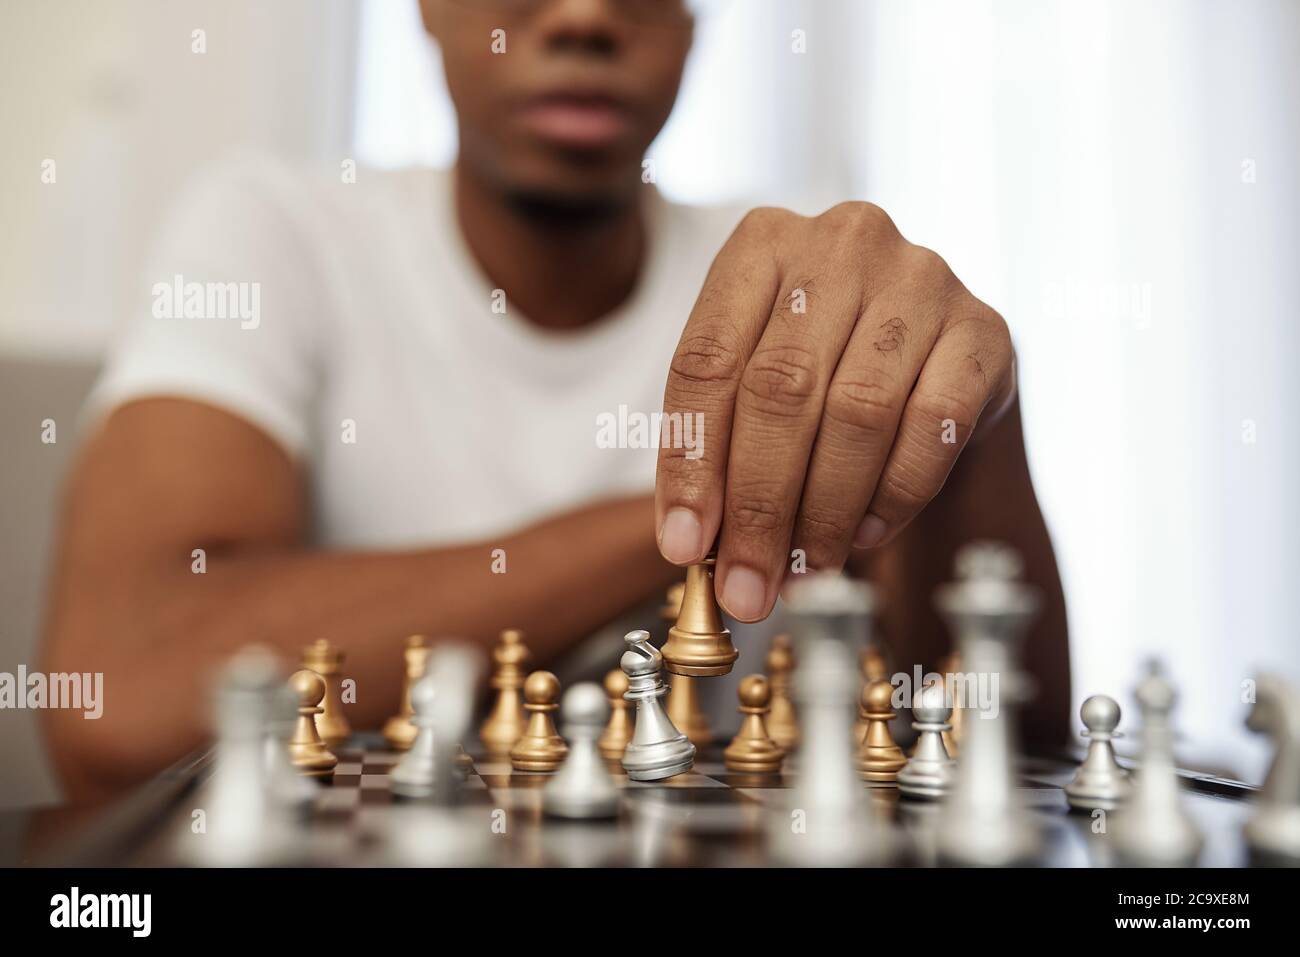 Concentré jeune Noir homme appréciant jouer aux échecs lors de rester à la maison pendant la quarantaine Banque D'Images